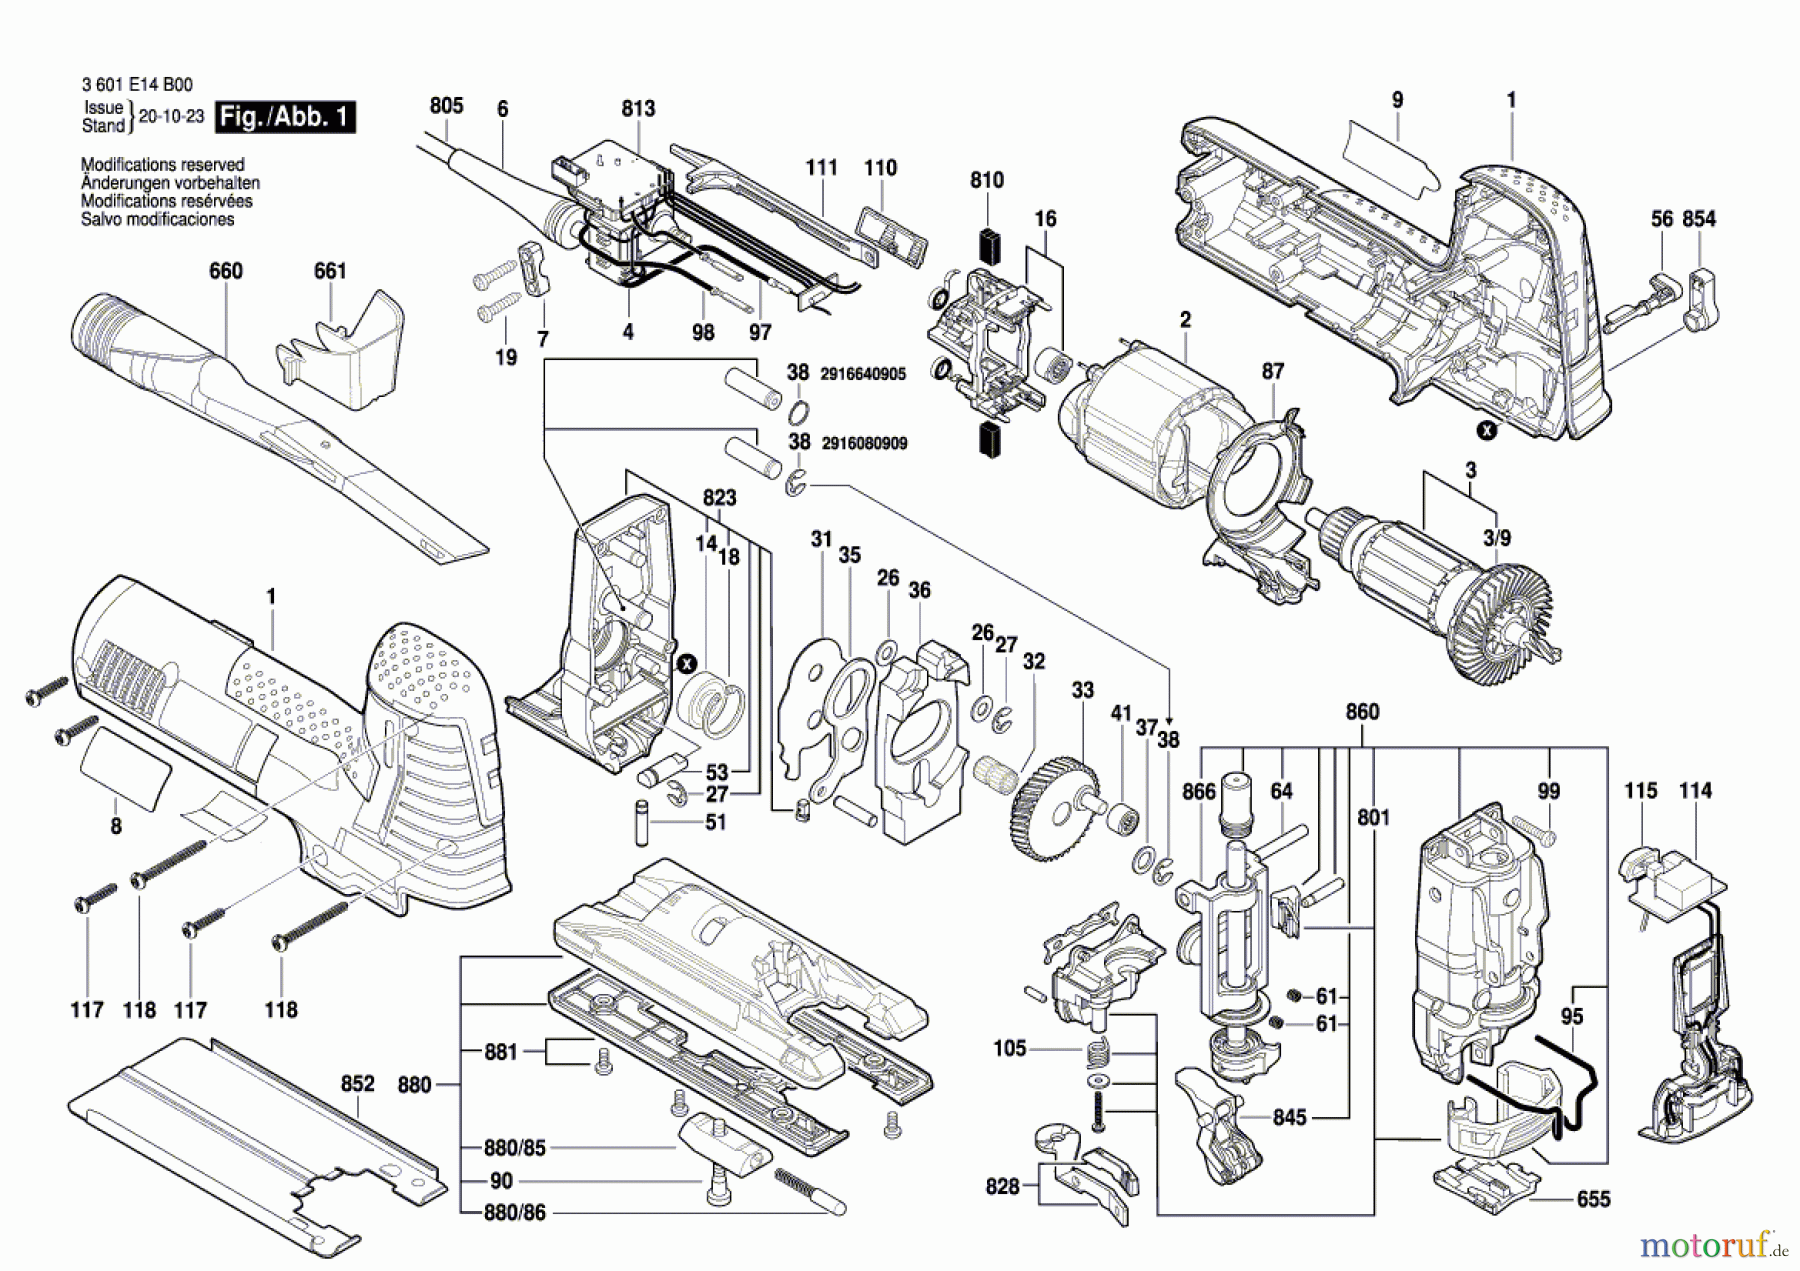  Bosch Werkzeug Stichsäge ST 140 E Seite 1